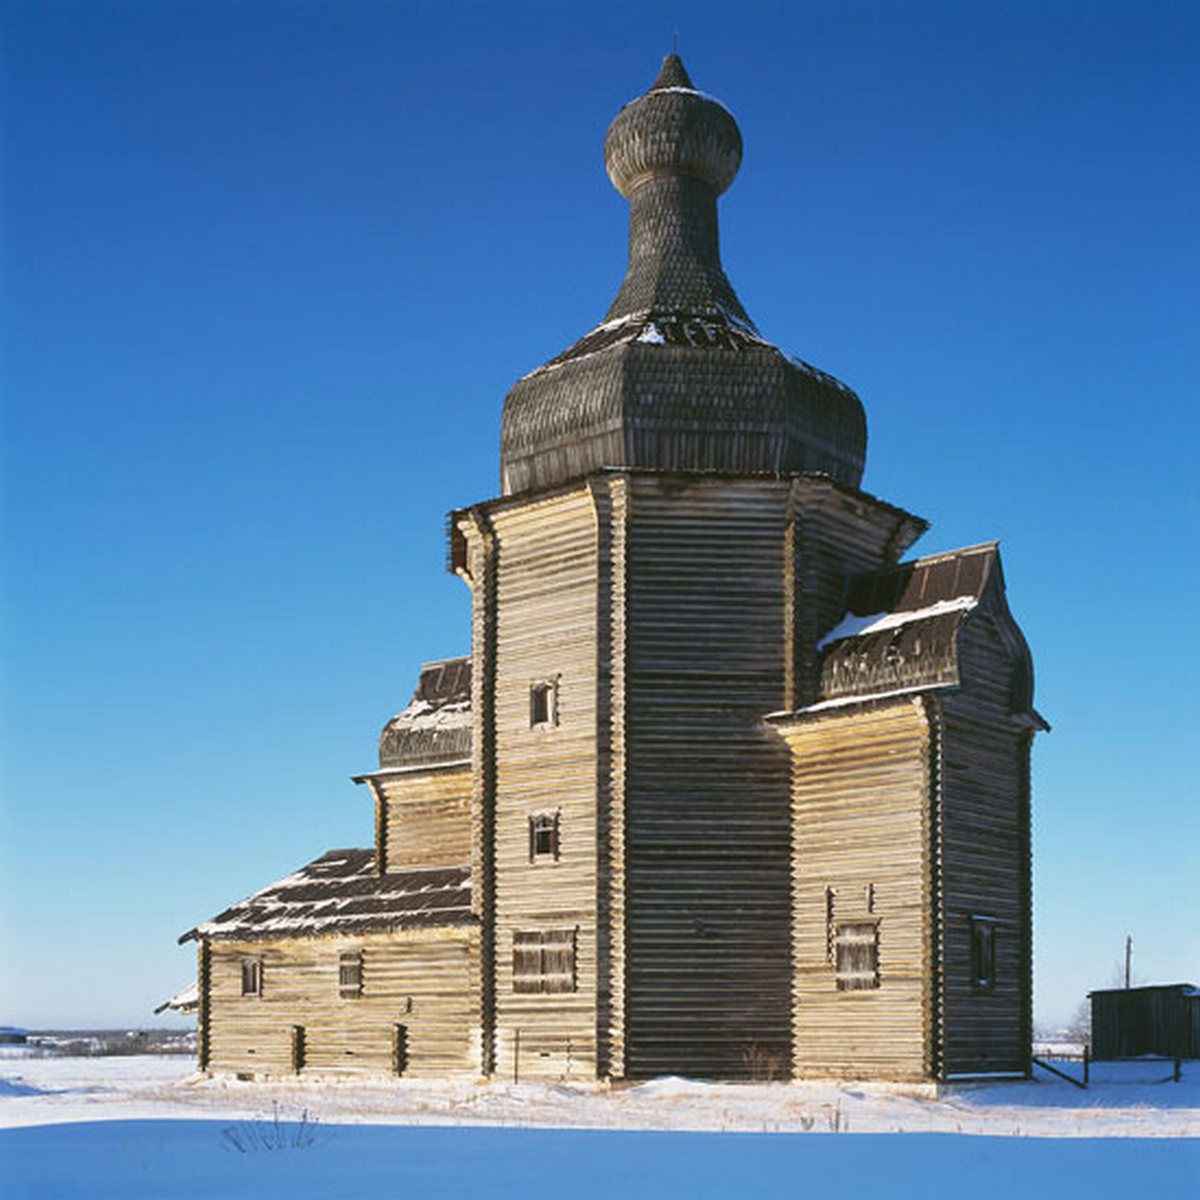 Архангельск Церковь и памятник архитектуры